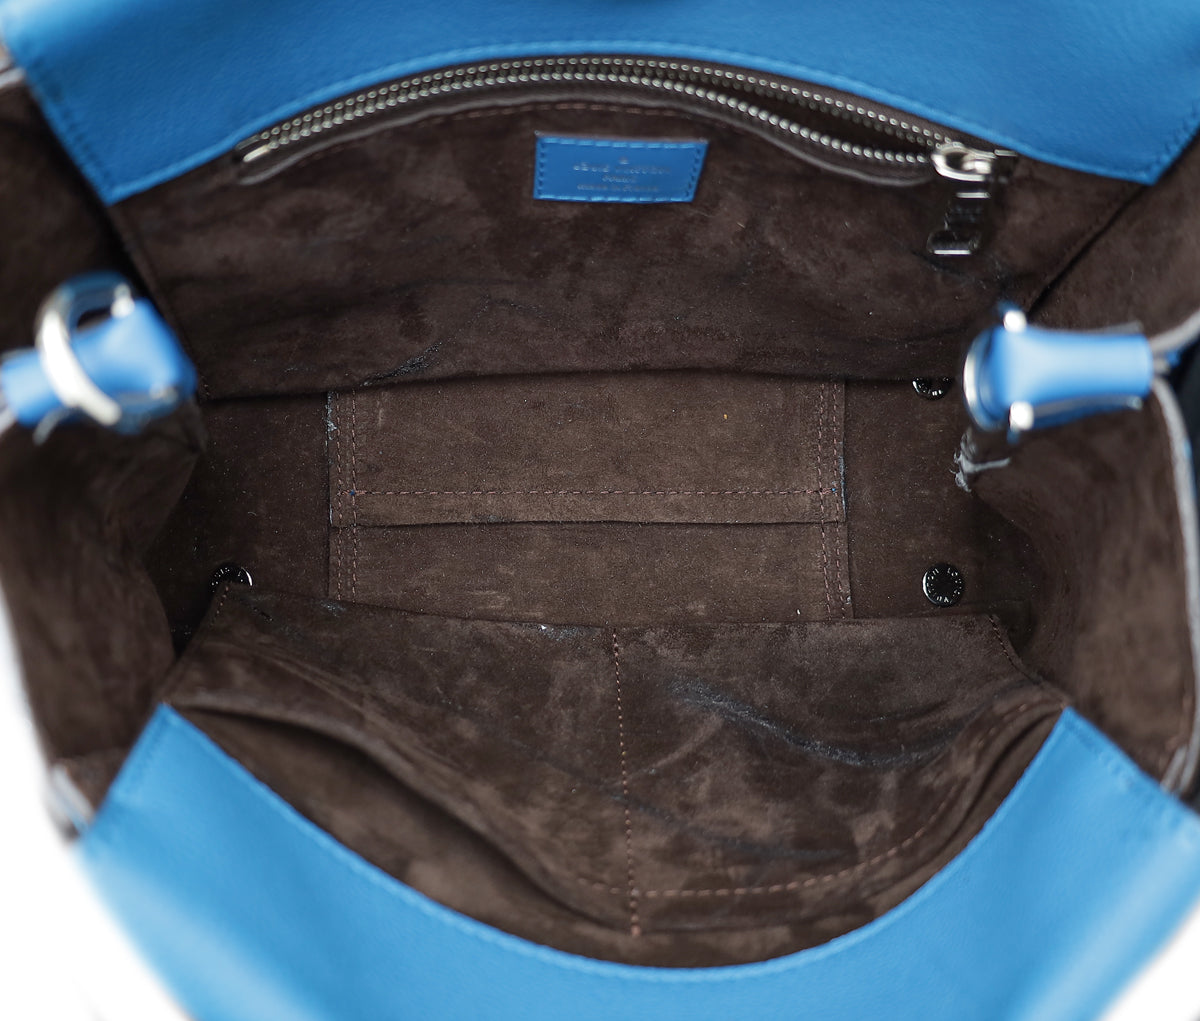 Louis Vuitton Blue Lagon W BB Tote Bag